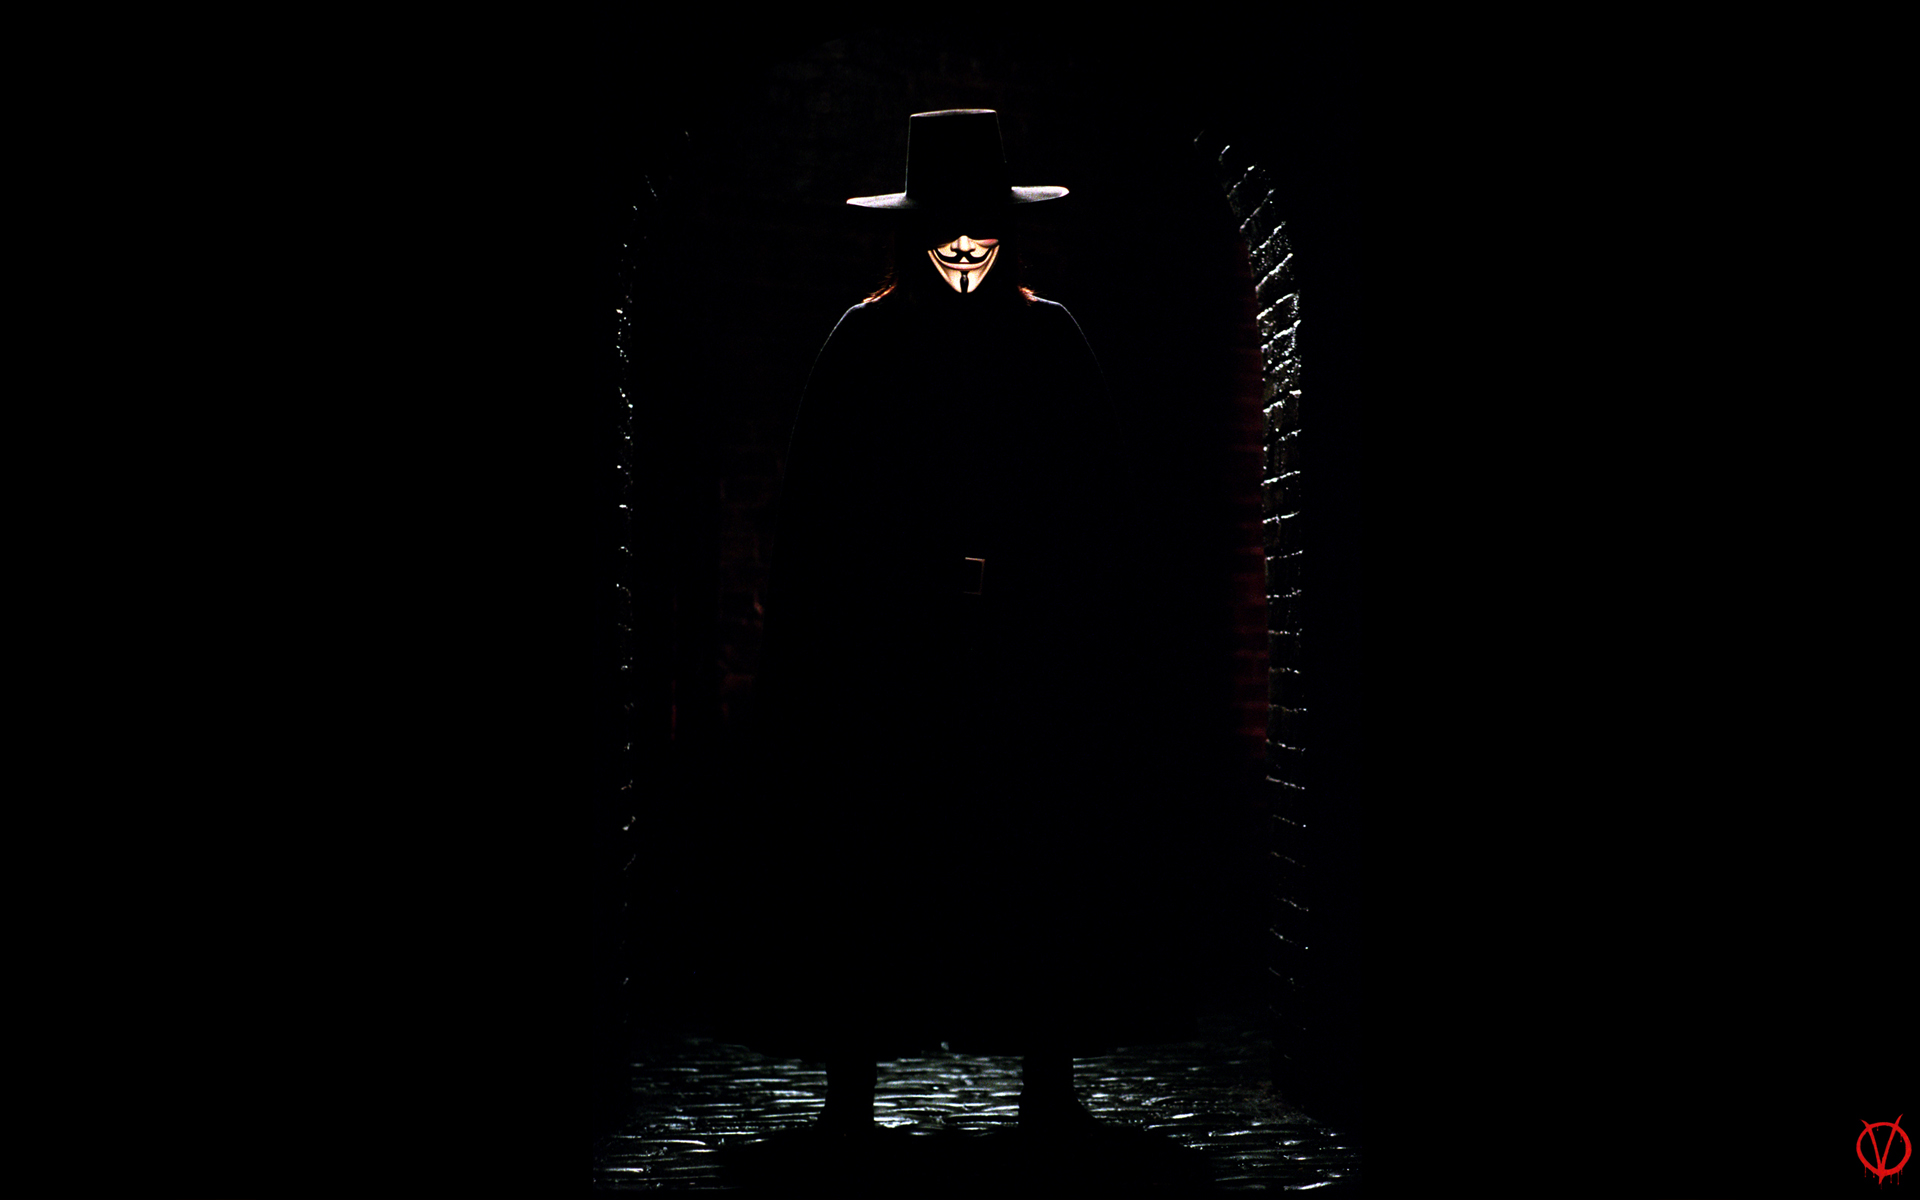 V for Vendetta - desktop wallpaper